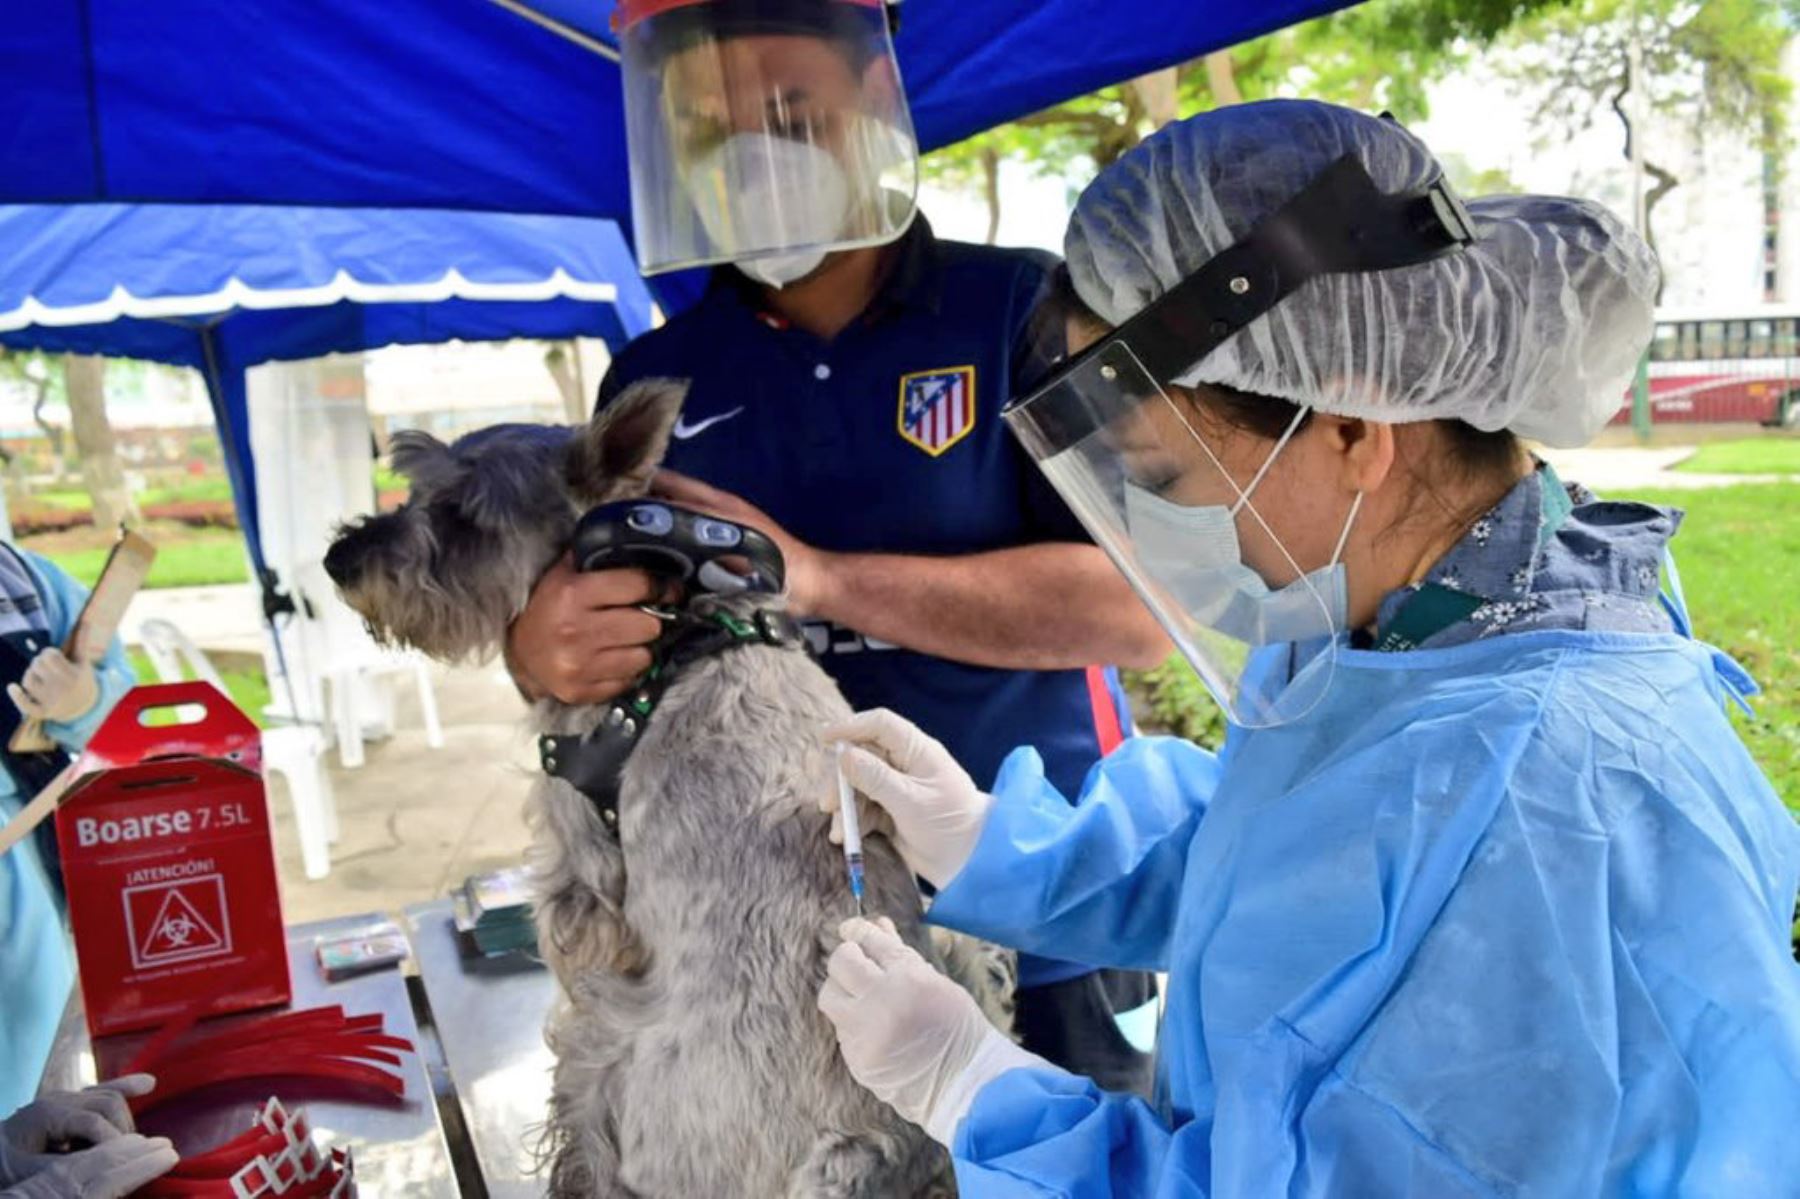 Minsa insta a la población a vacunar a sus canes para evitar el riesgo de rabia en humanos. Foto: Minsa